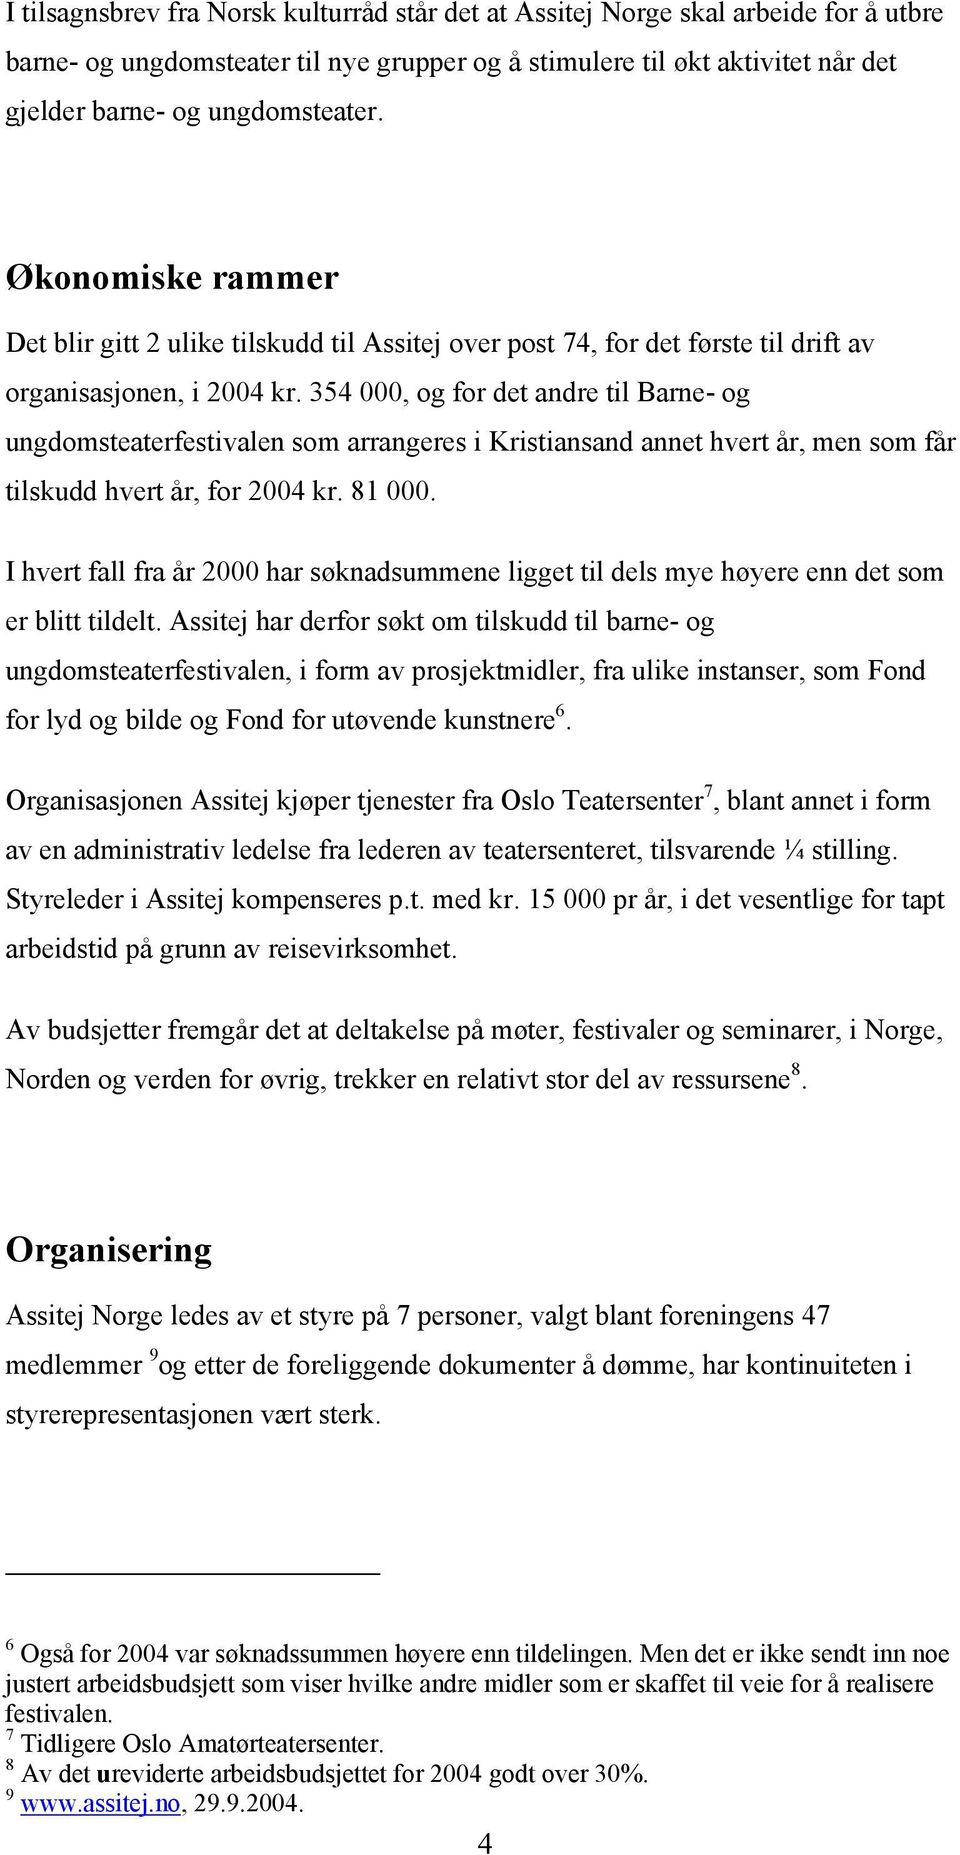 354 000, og for det andre til Barne- og ungdomsteaterfestivalen som arrangeres i Kristiansand annet hvert år, men som får tilskudd hvert år, for 2004 kr. 81 000.